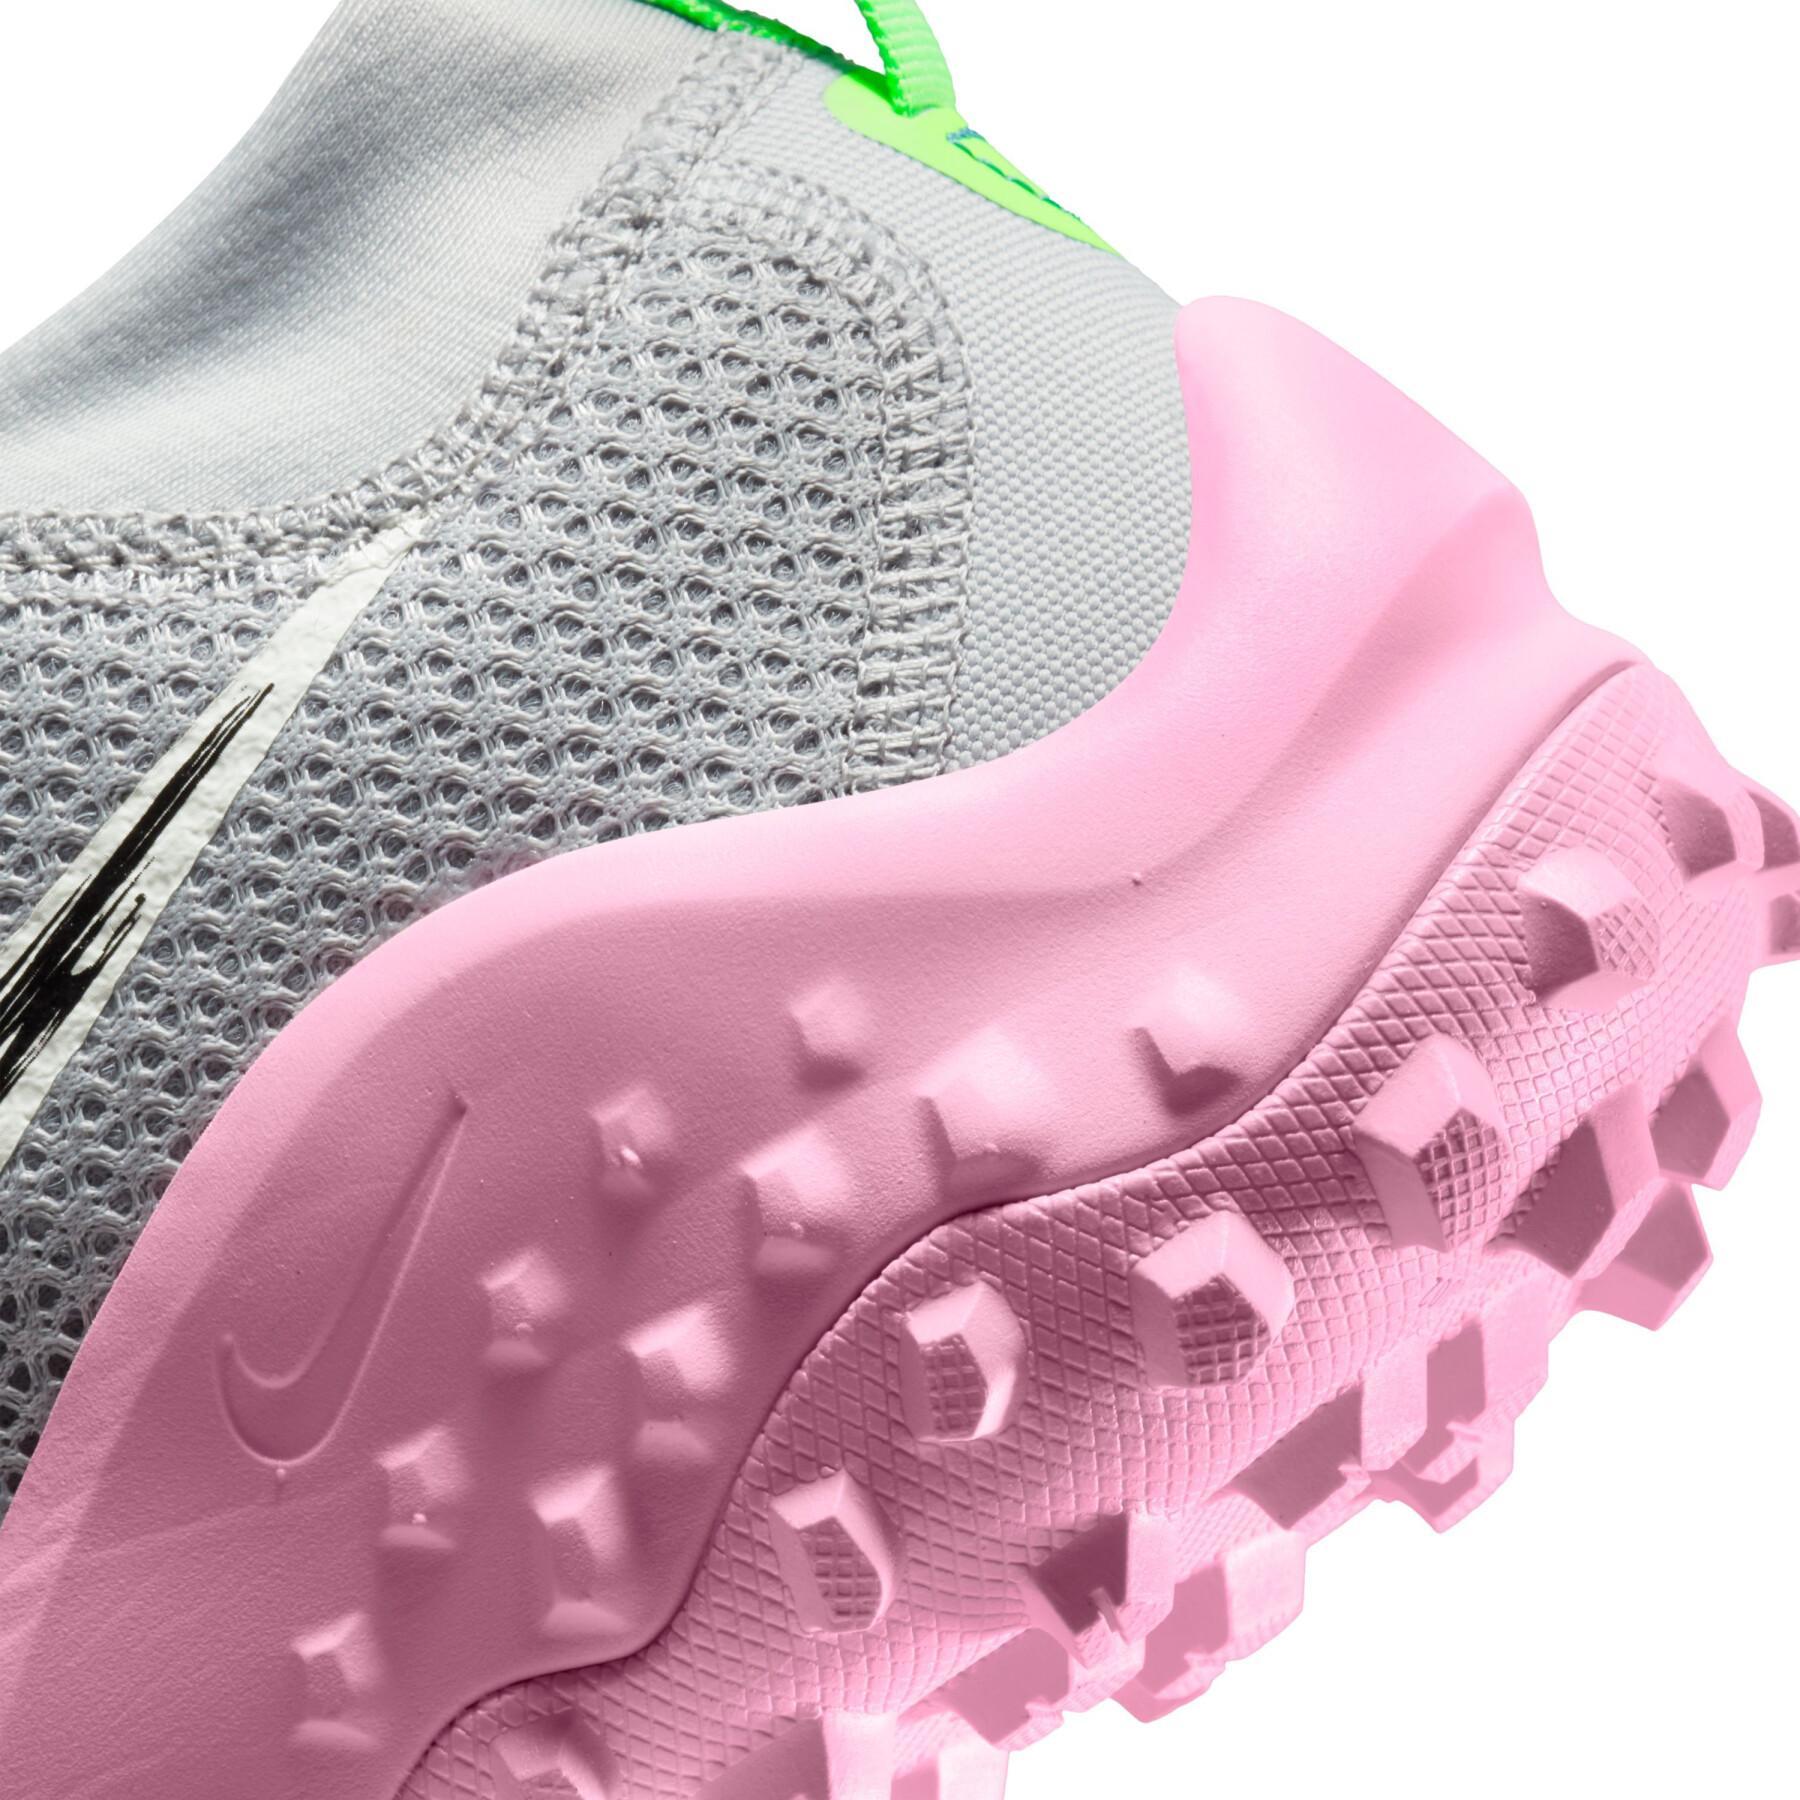 Trailrunning-Schuhe für Frauen Nike Wildhorse 7